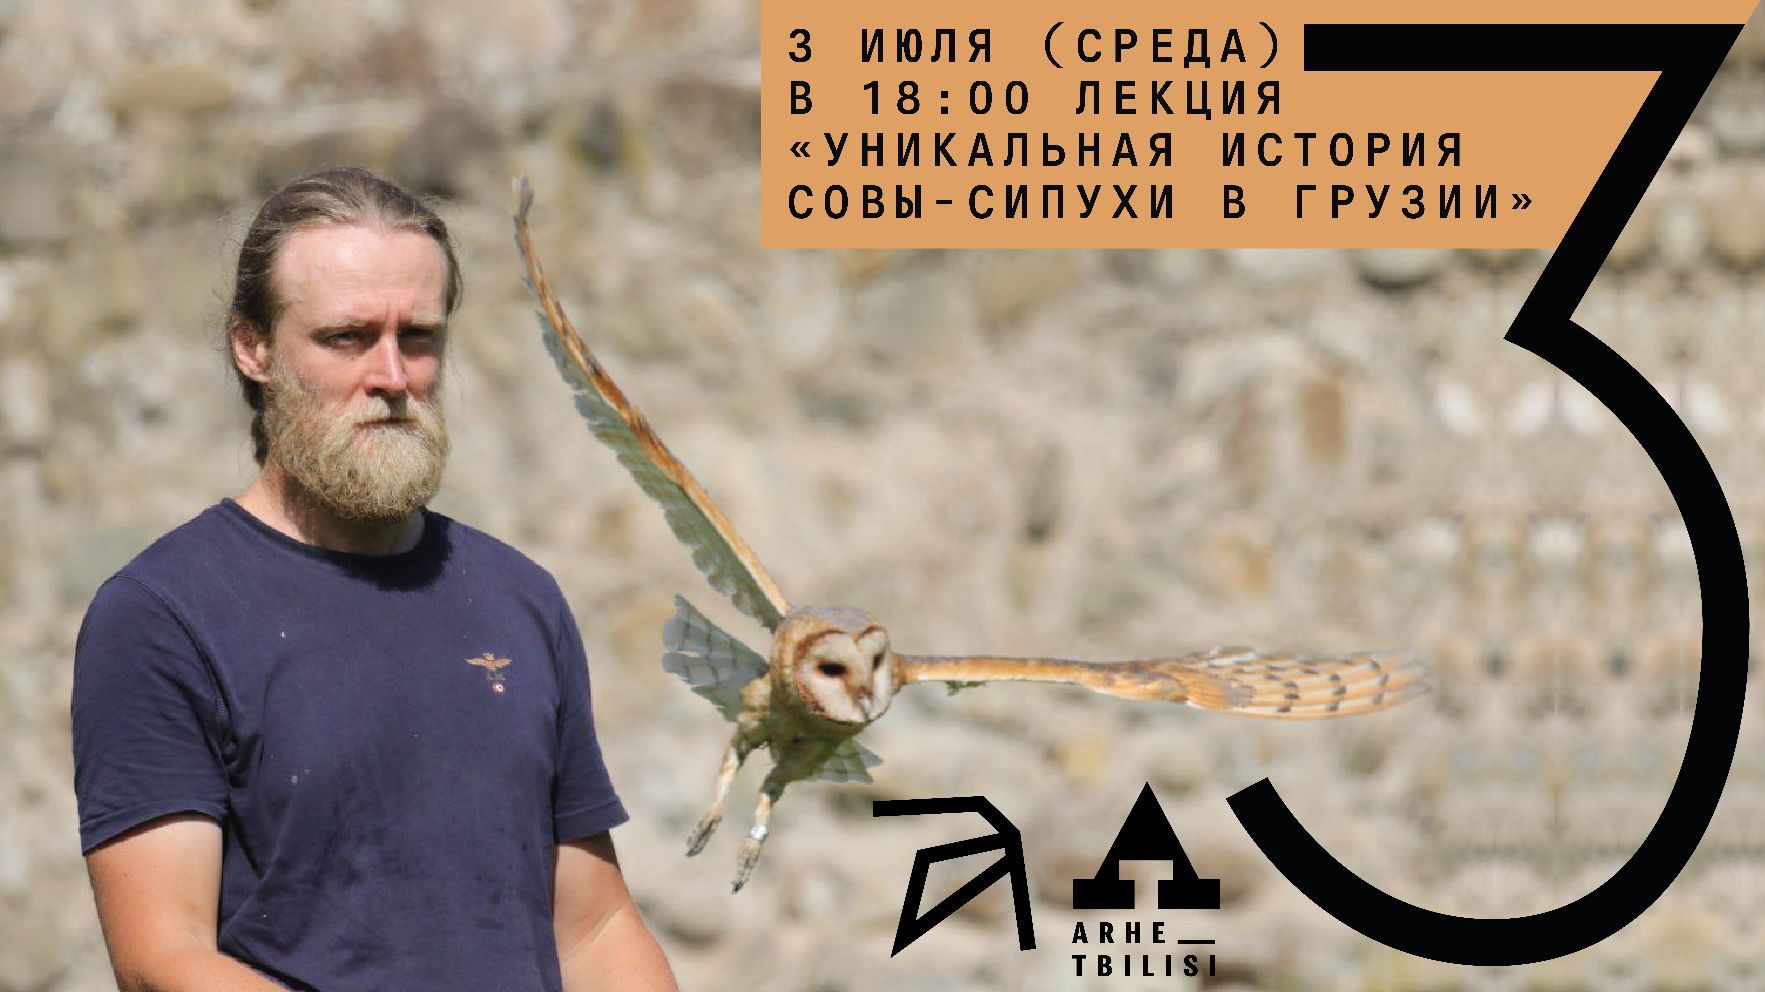 Онлайн-лекция "Уникальная история совы-сипухи в Грузии"